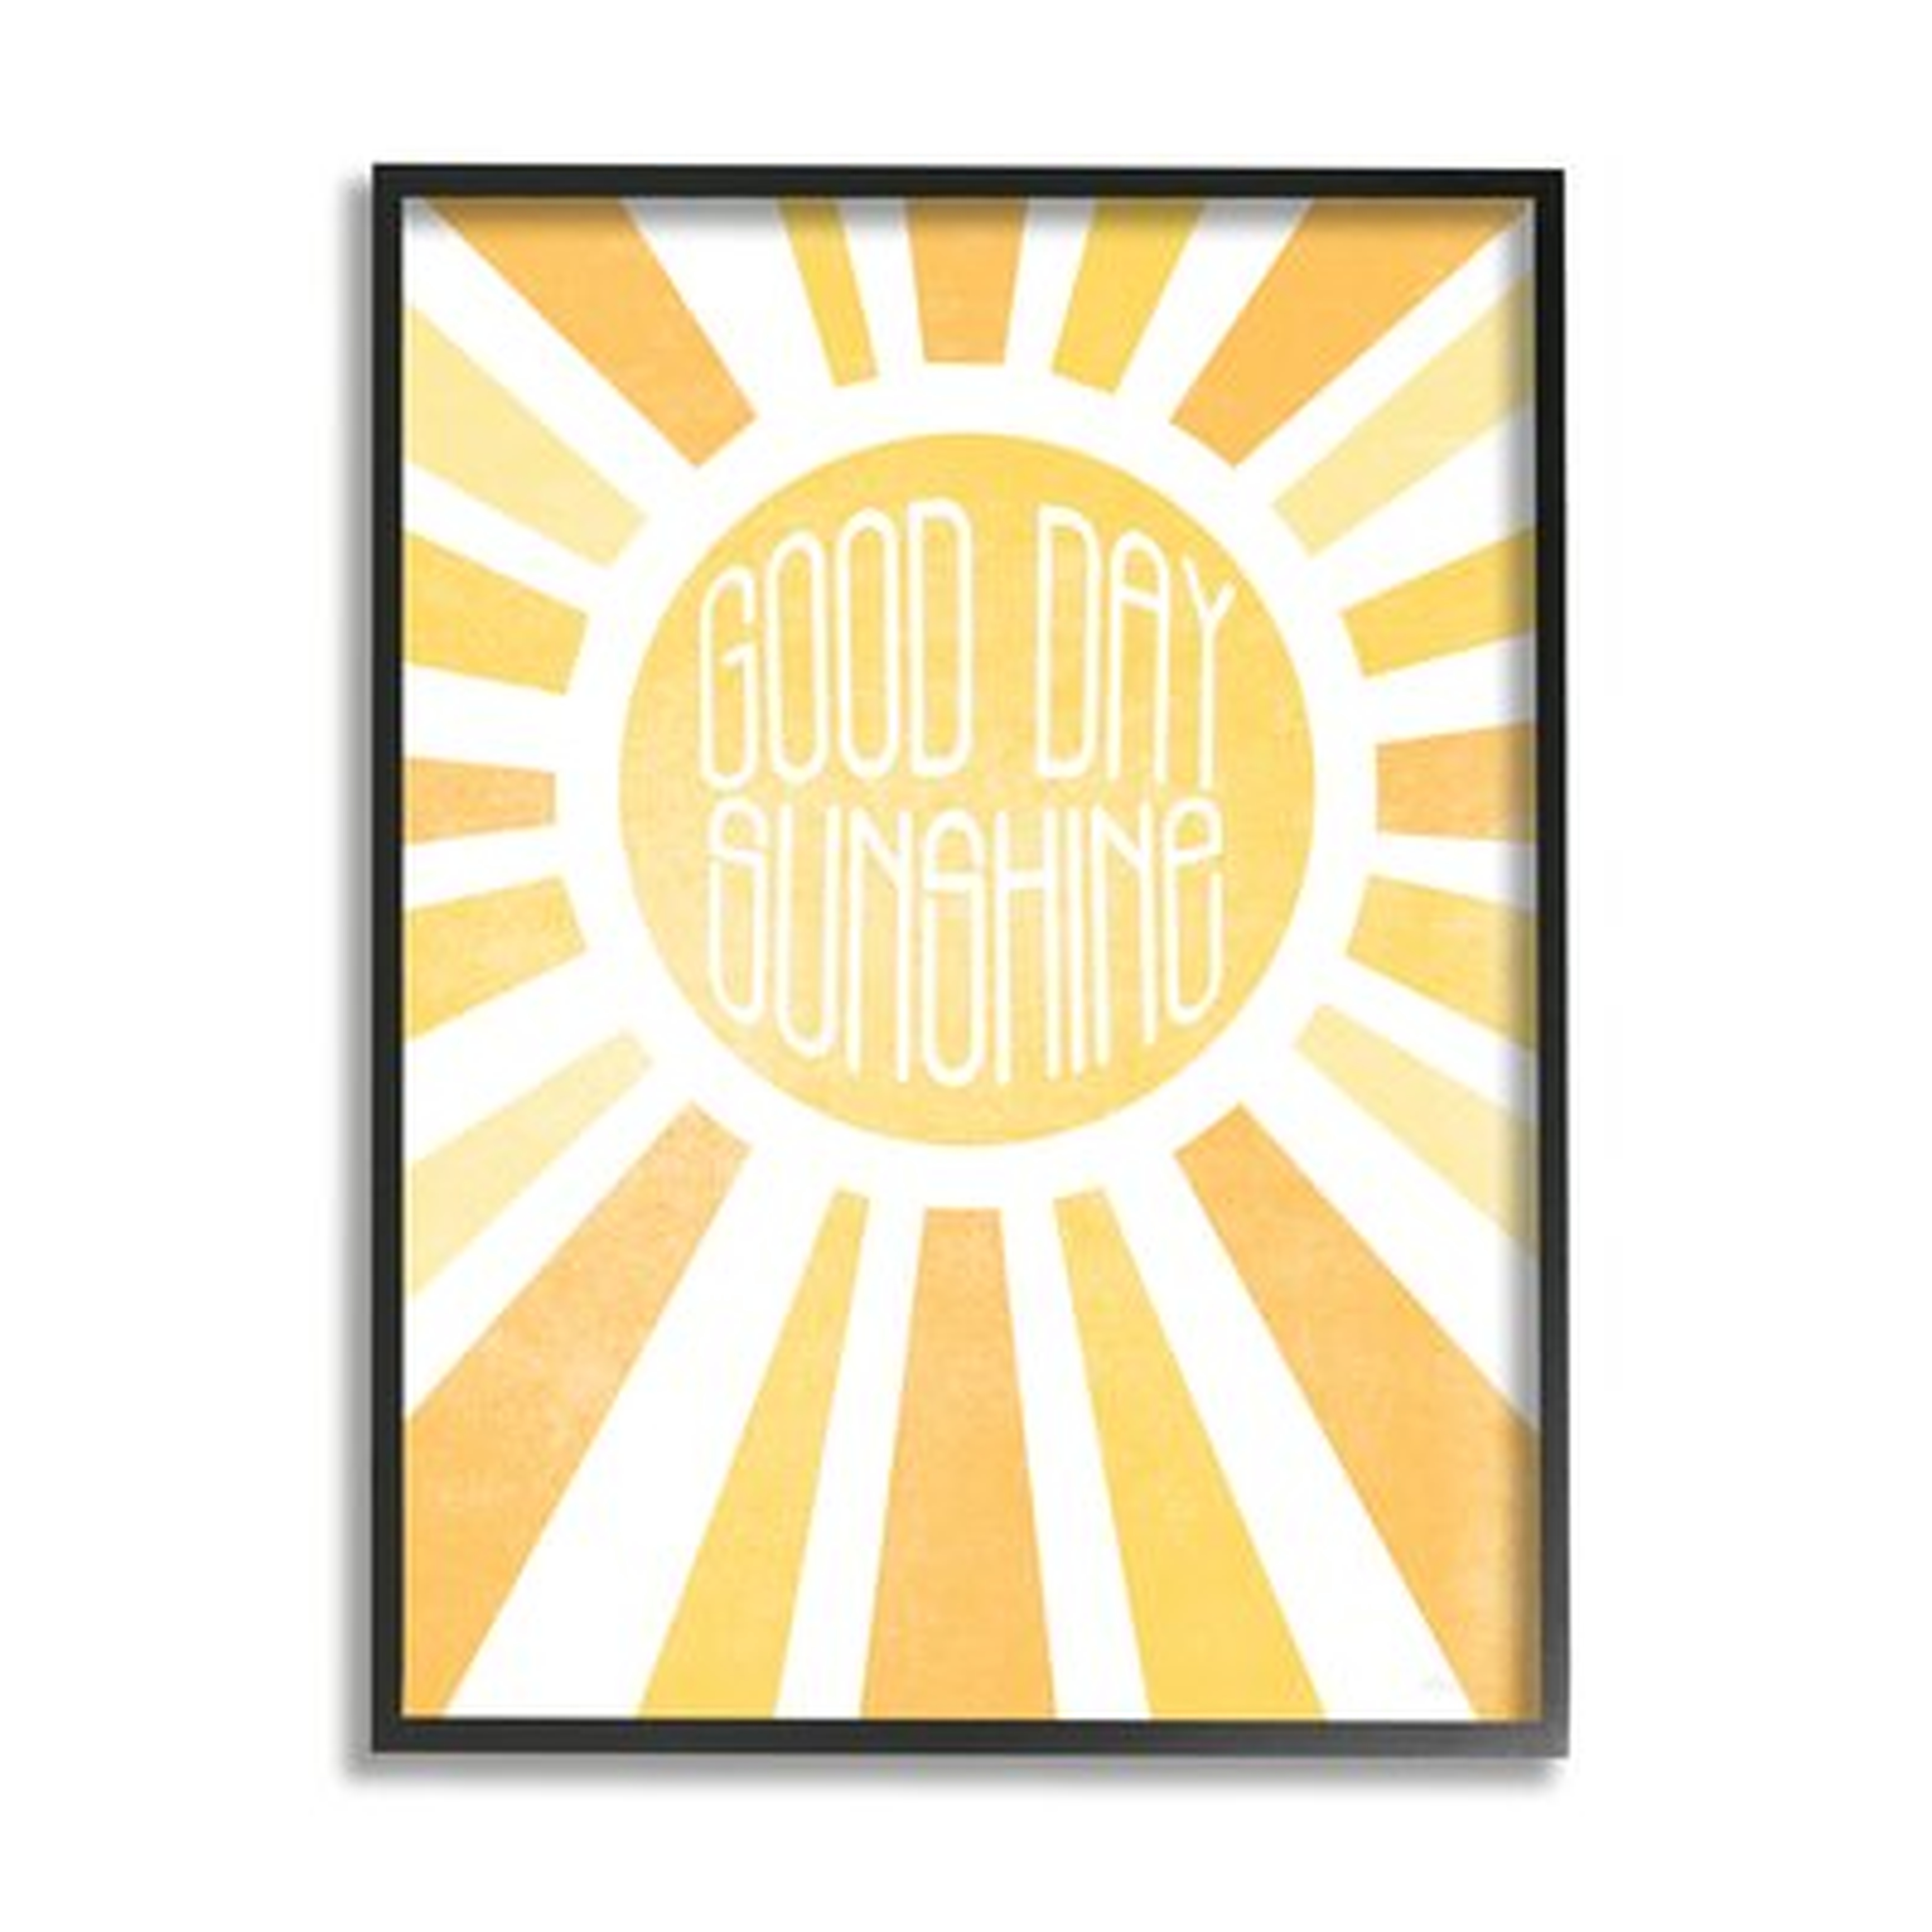 Good Day Sunshine Greeting Bright Yellow Rays - Wayfair